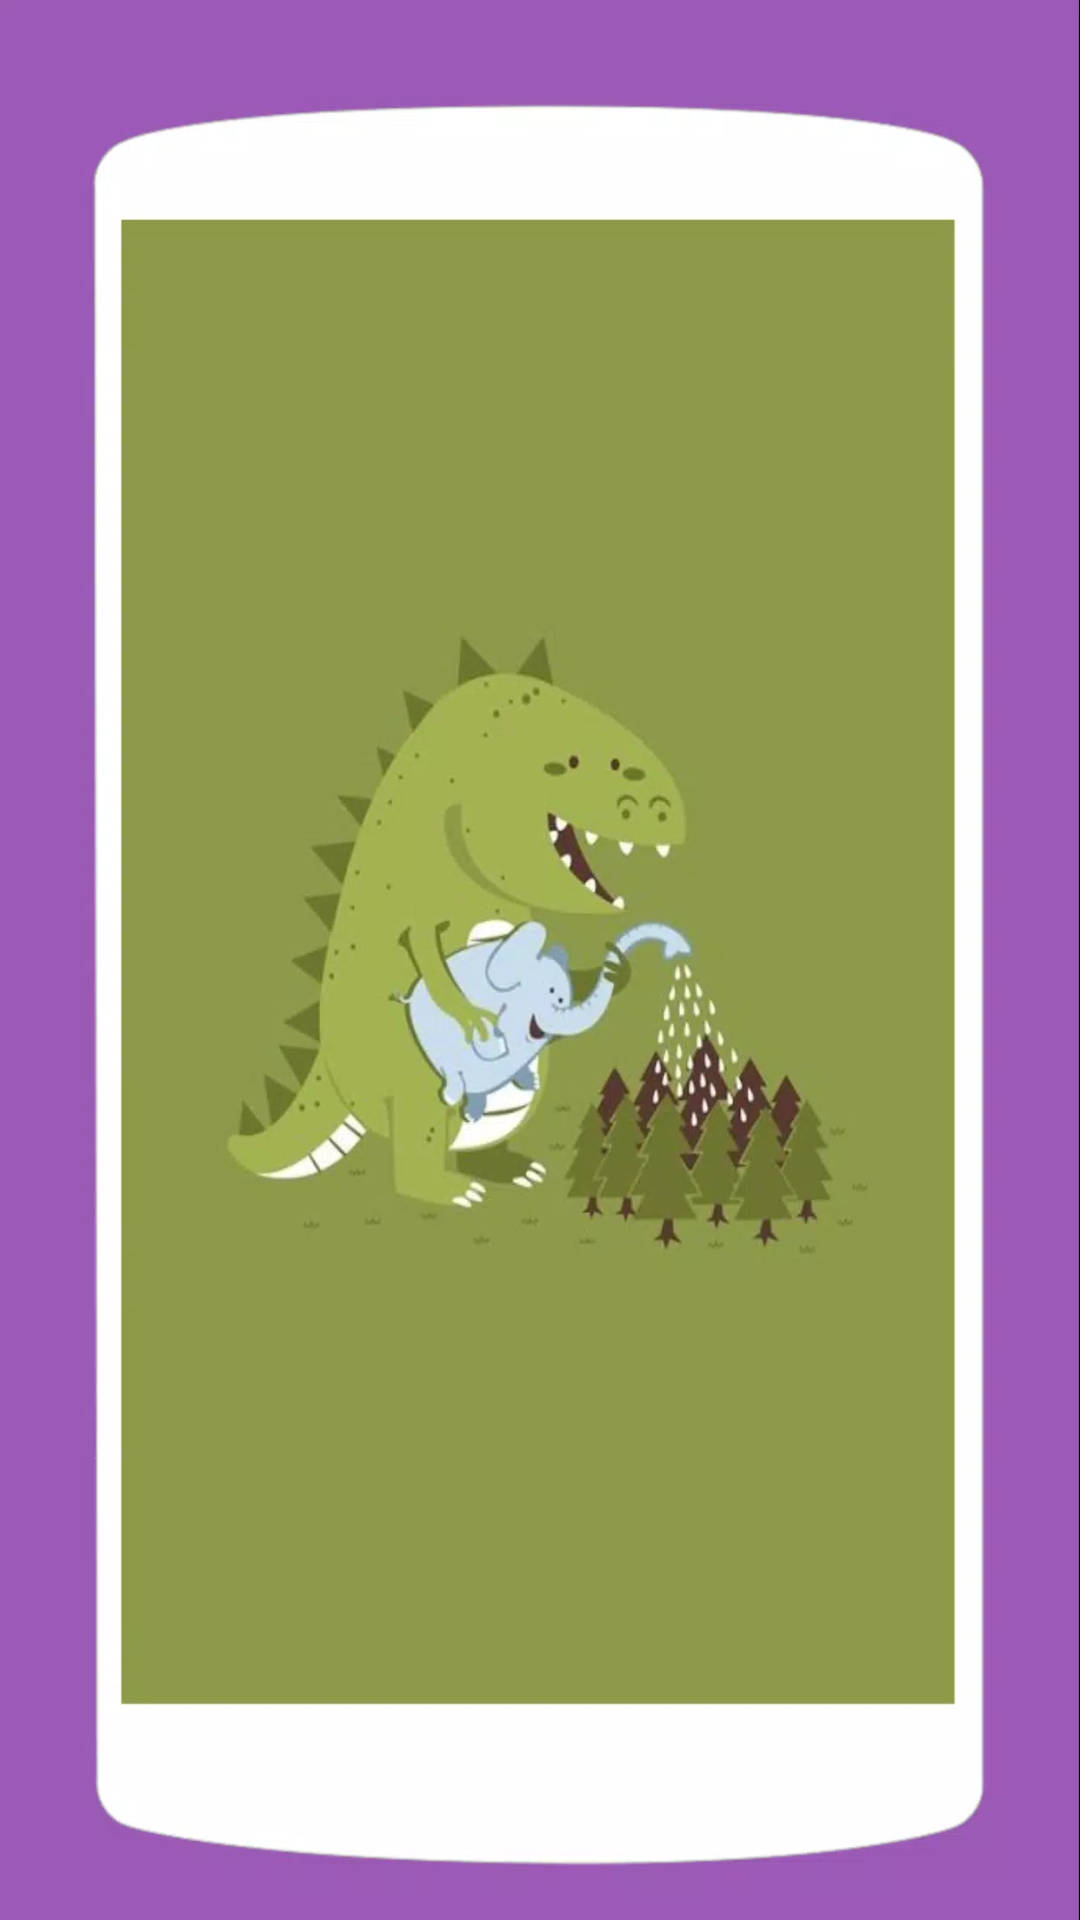 Denne komiske dinosaur vil få dig til at bryde sammen. Wallpaper